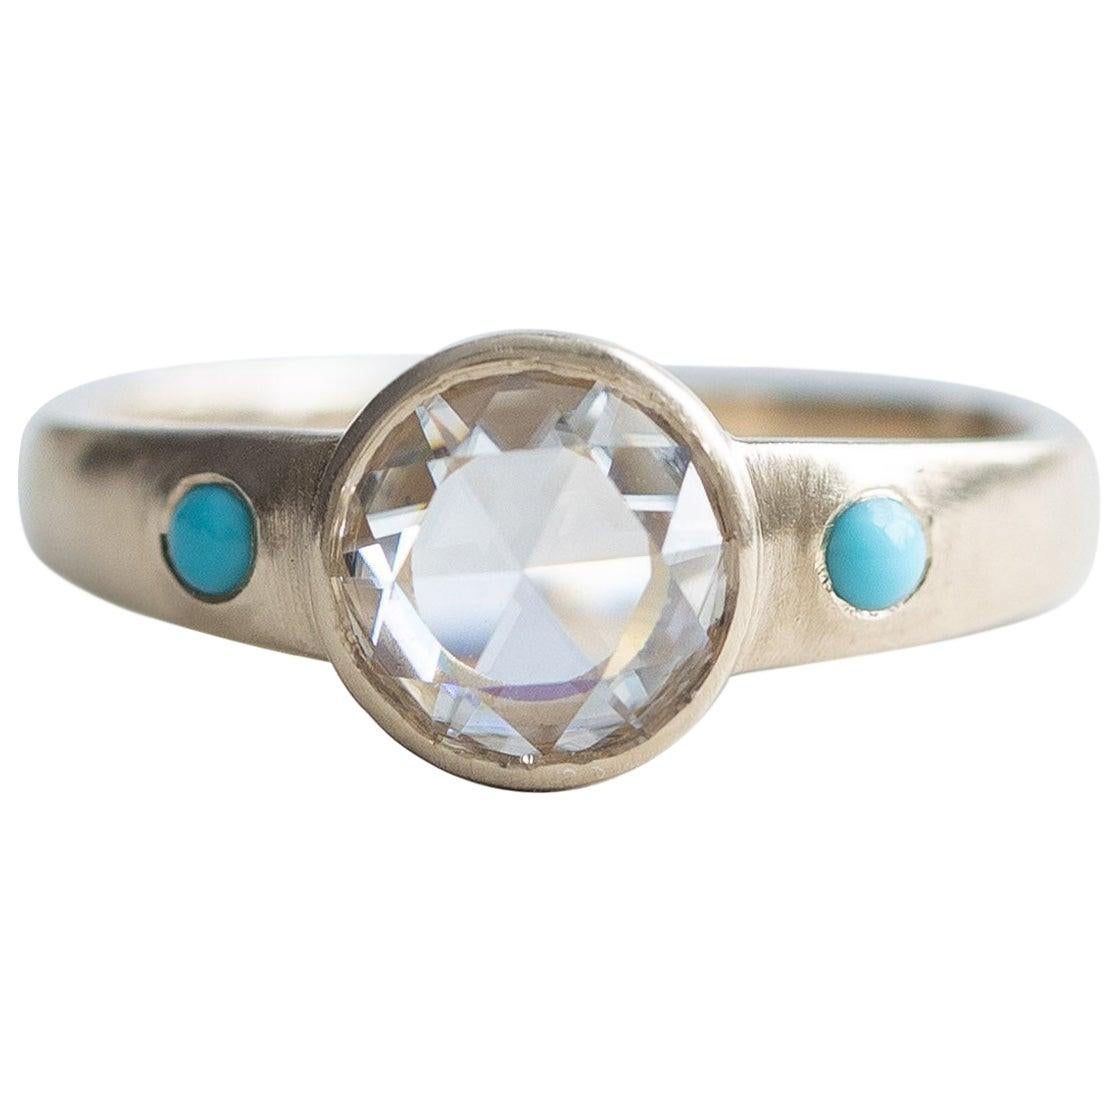 For Sale:  14 Karat Rose Cut Diamond Ring, Turquoise Ring, Yellow Gold Ring, Boho Ring